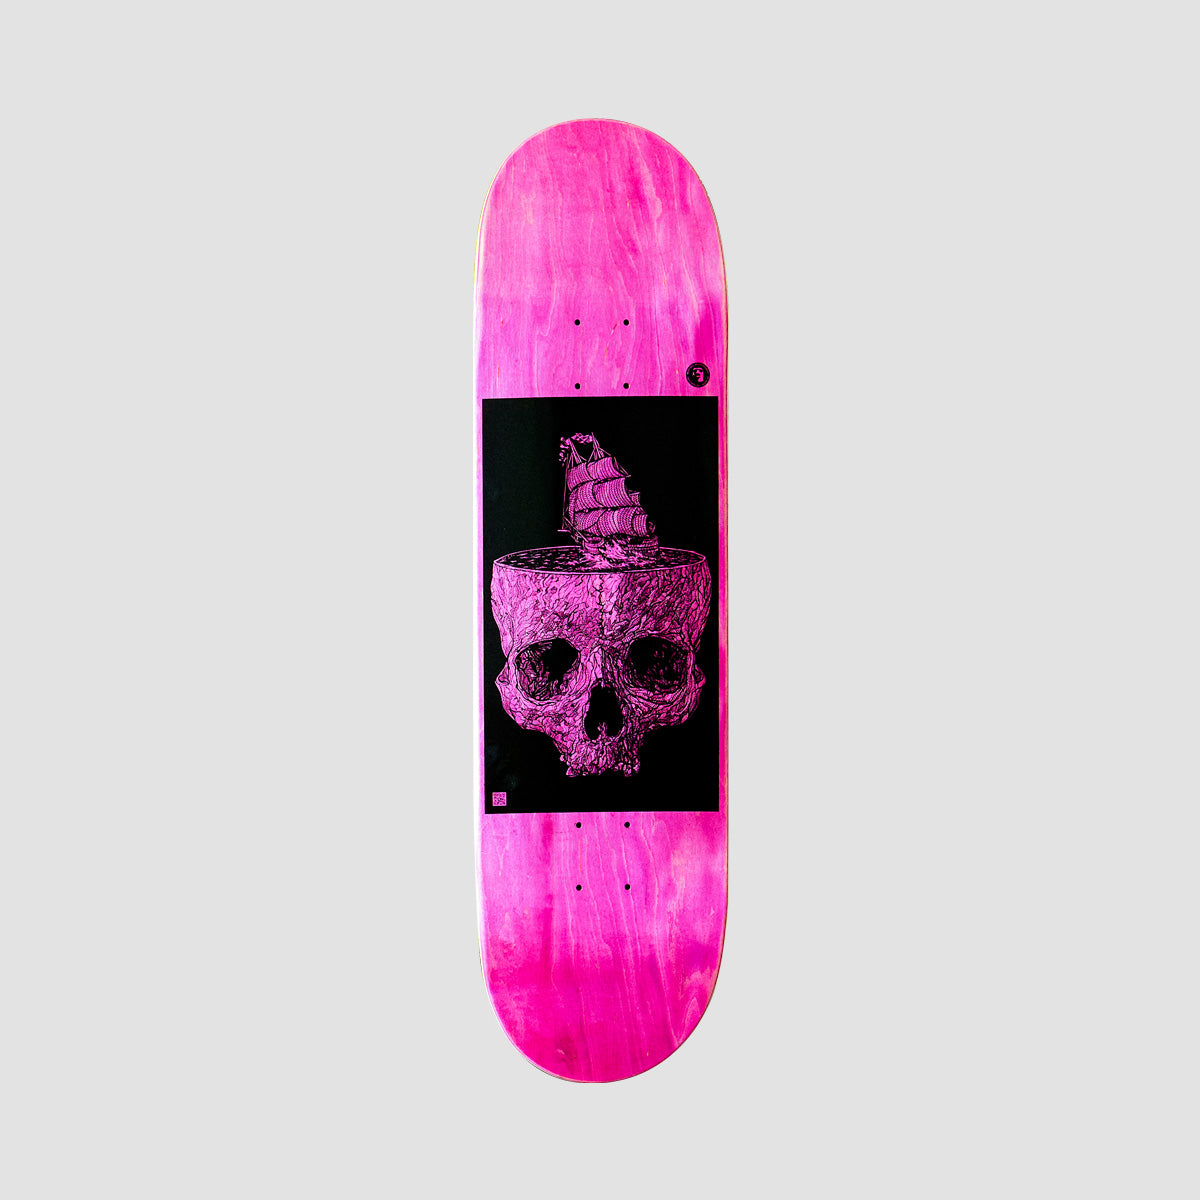 Heathen Stormy Seas on Taperhead Skateboard Deck Pink - 8.5"